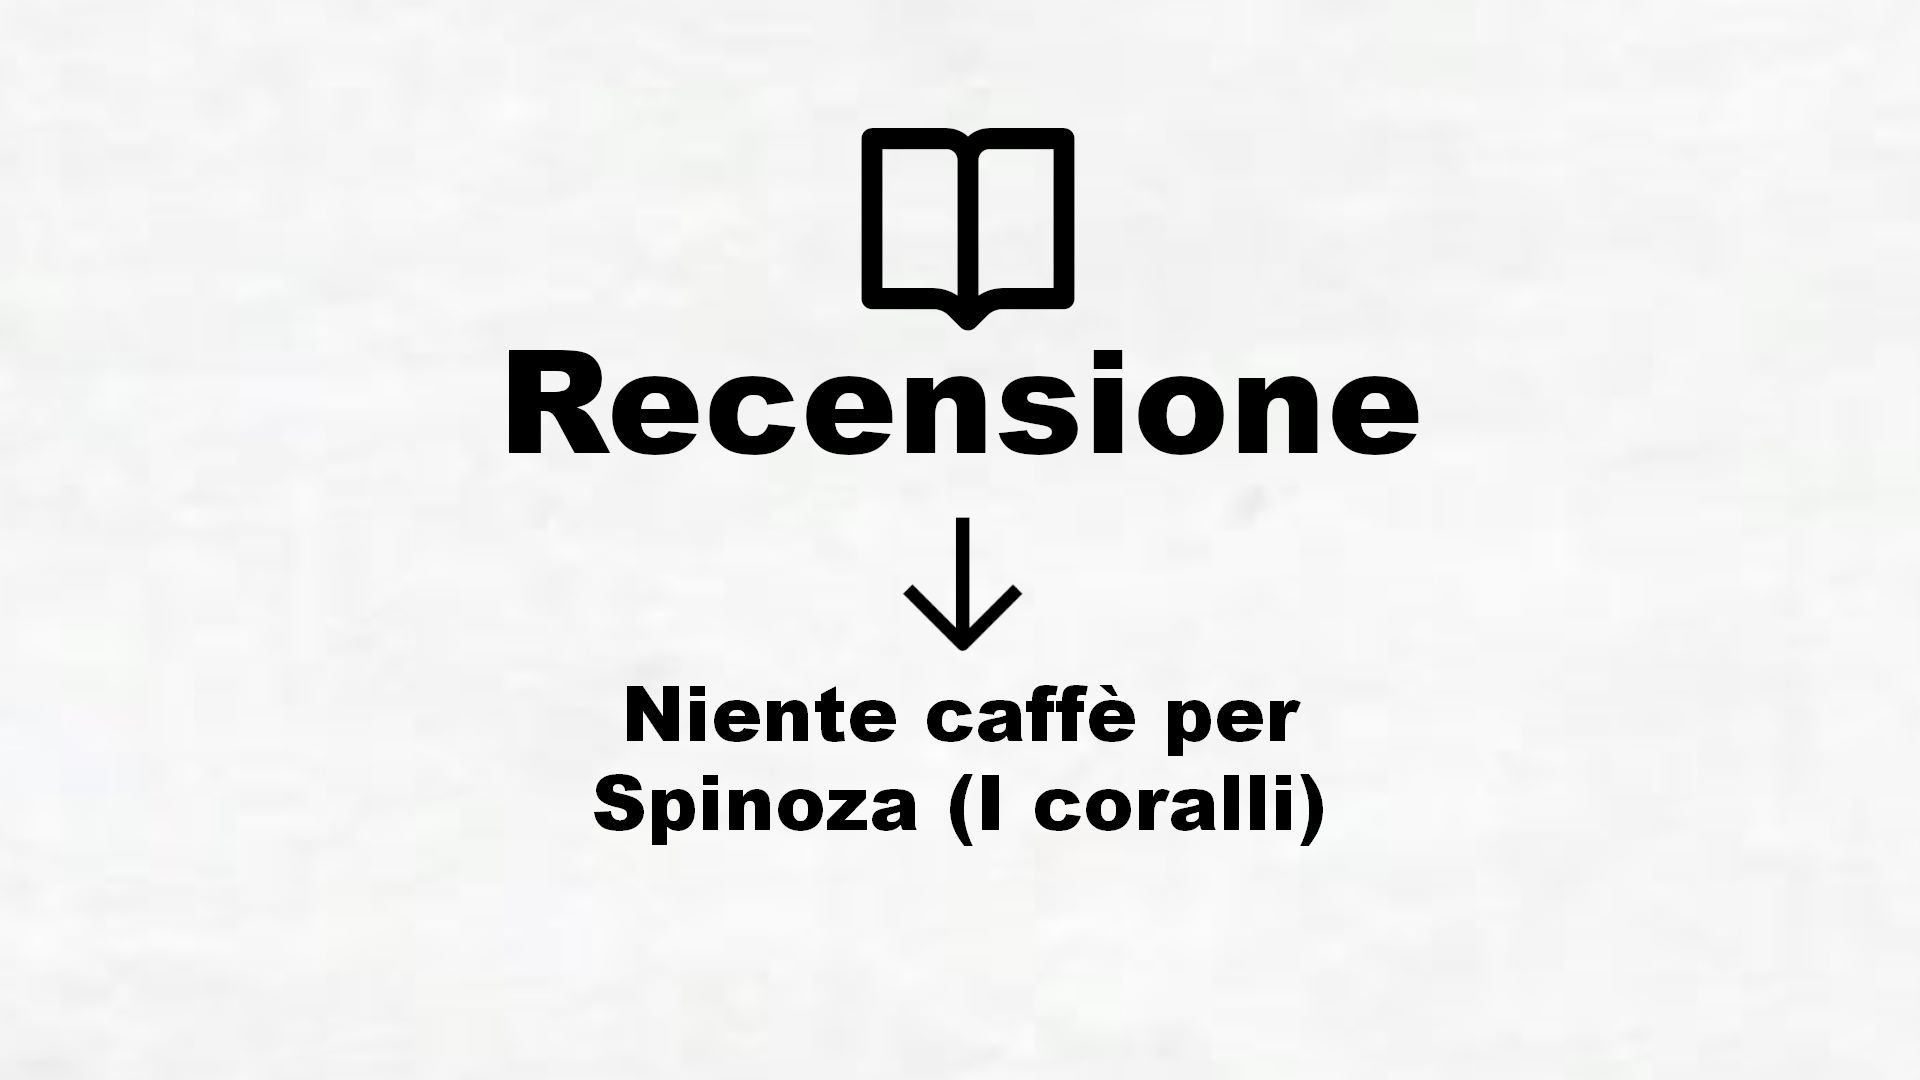 Niente caffè per Spinoza (I coralli) – Recensione Libro